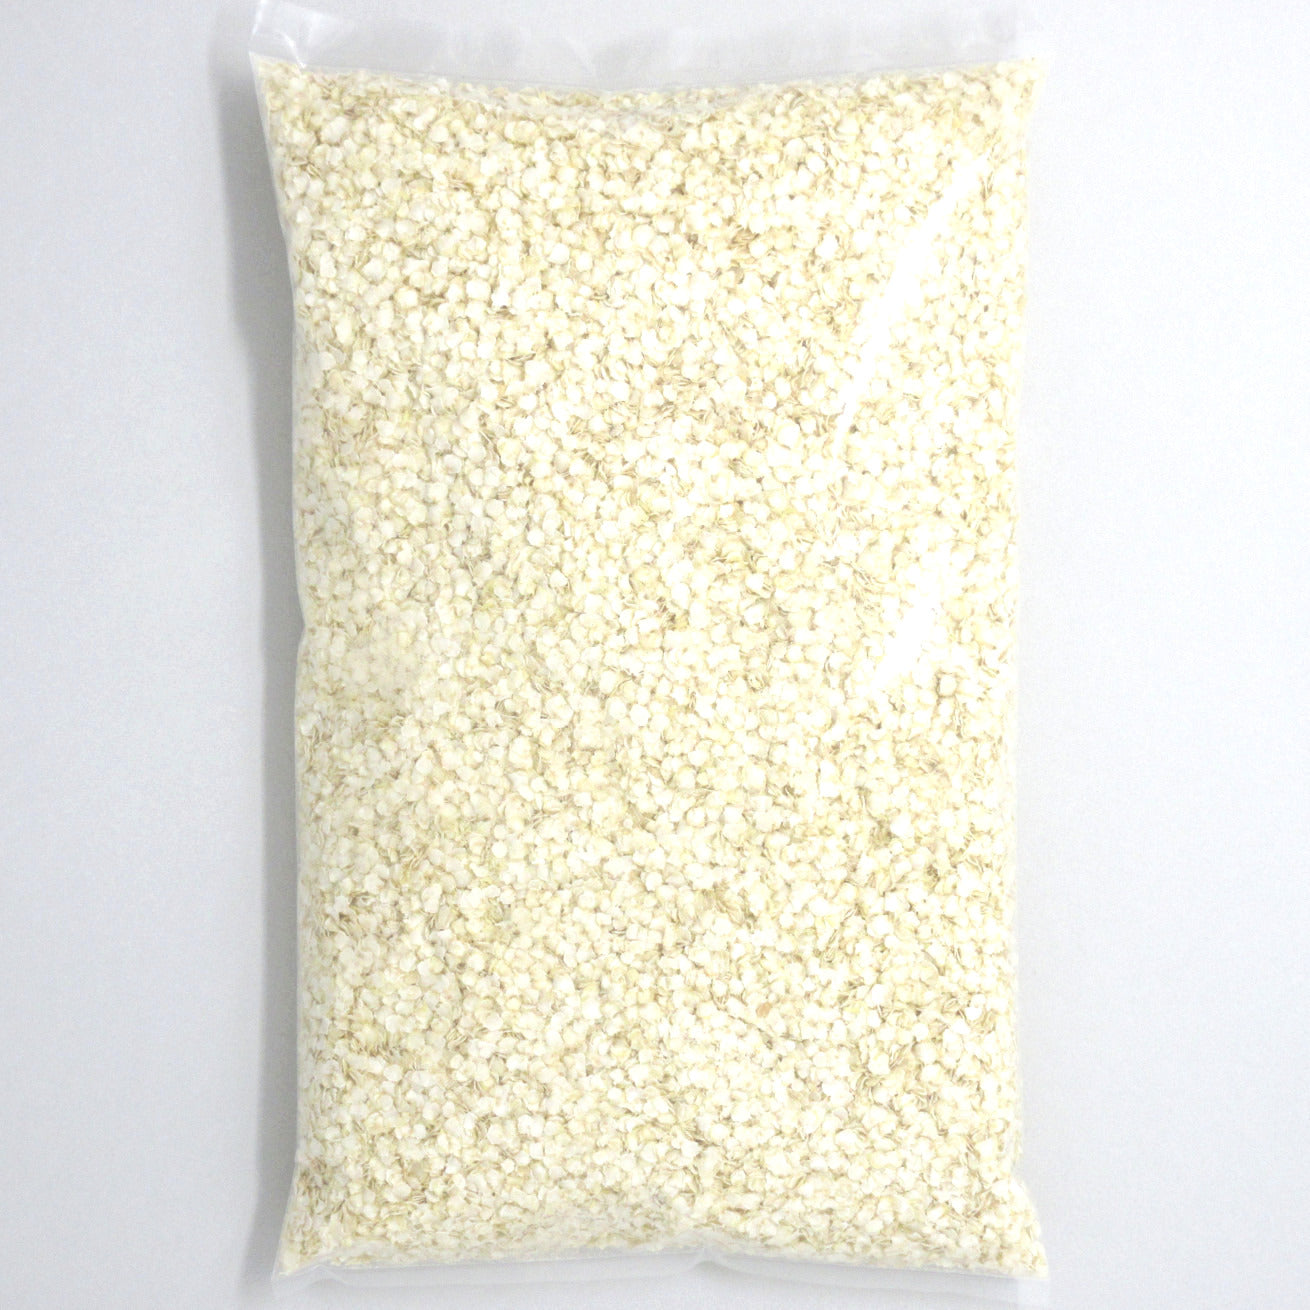 Flour Barrel product image - Quinoa Flakes